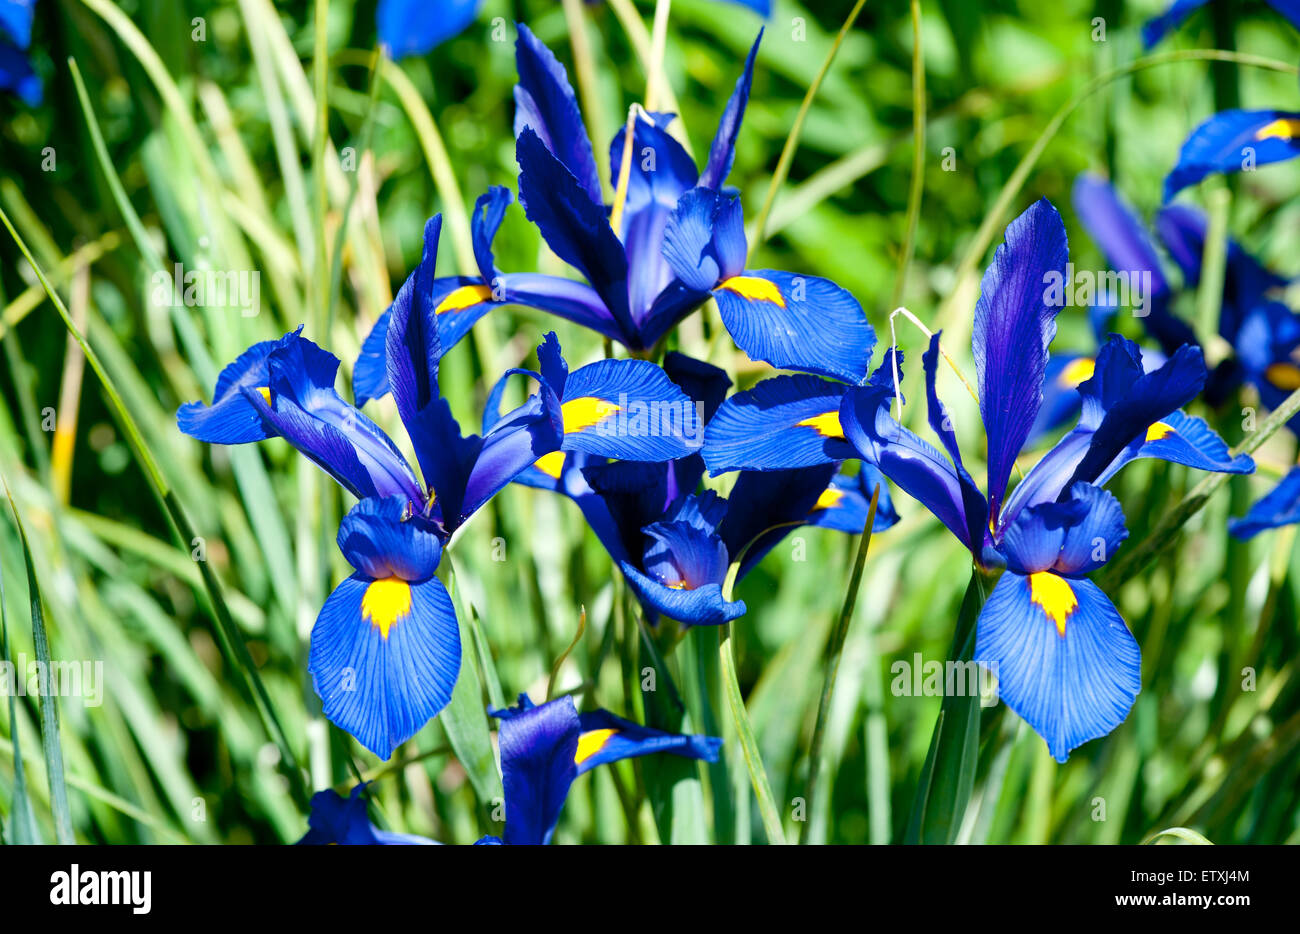 Blue Iris Flower Over Green Grass At The Summer Garden Stock Photo Alamy